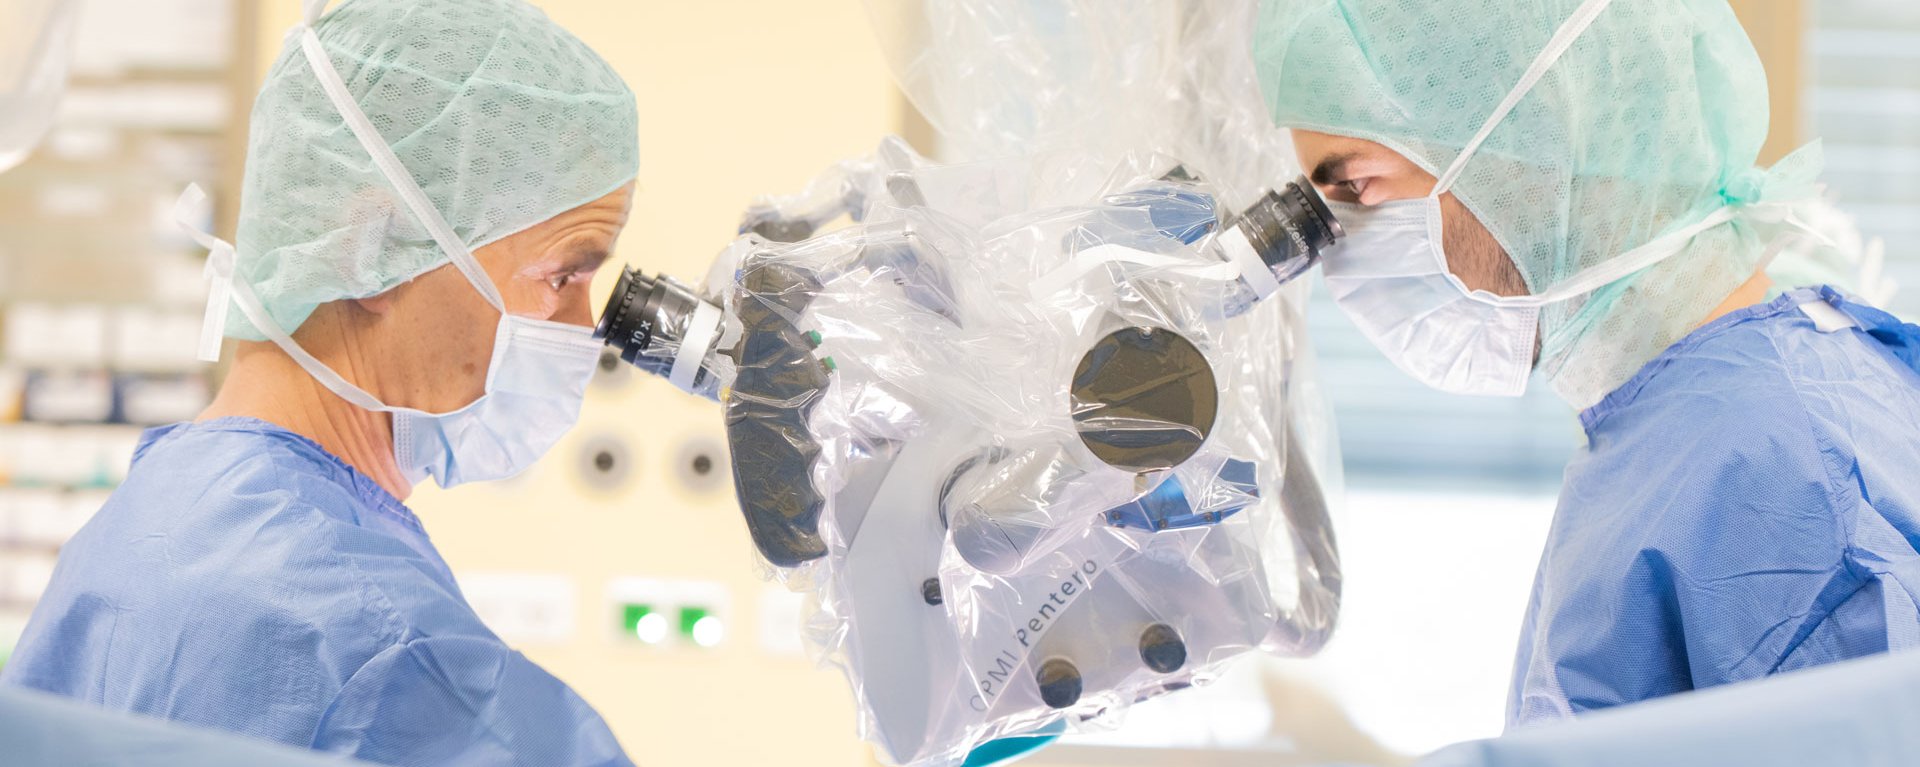 Zwei Neurochirurgen blicken während einer Operation in ein medizinsiches High Tech Gerät der Firma CPMI Pentero